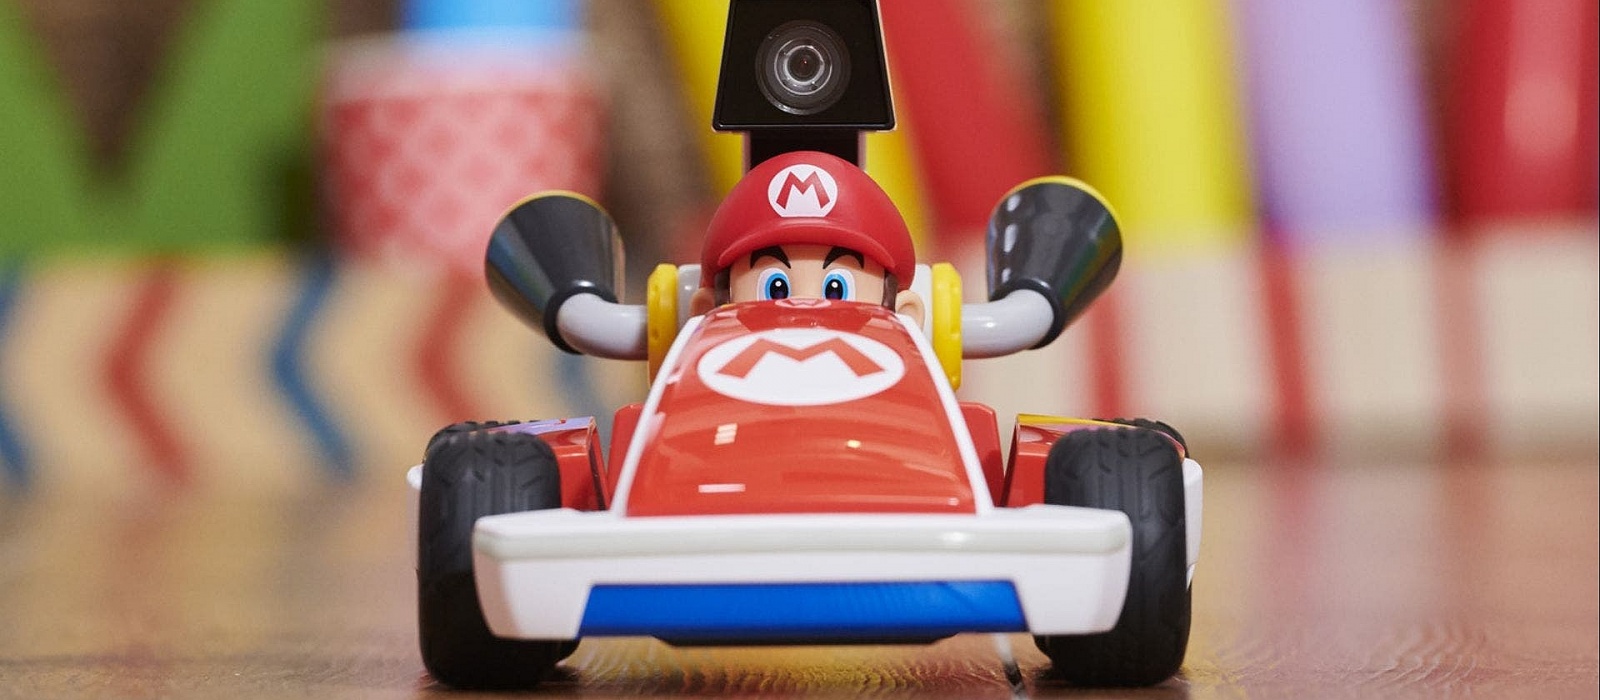 Вот как выглядит геймплей Mario Kart Live: Home Circuit. Nintendo рассказала подробности об игре